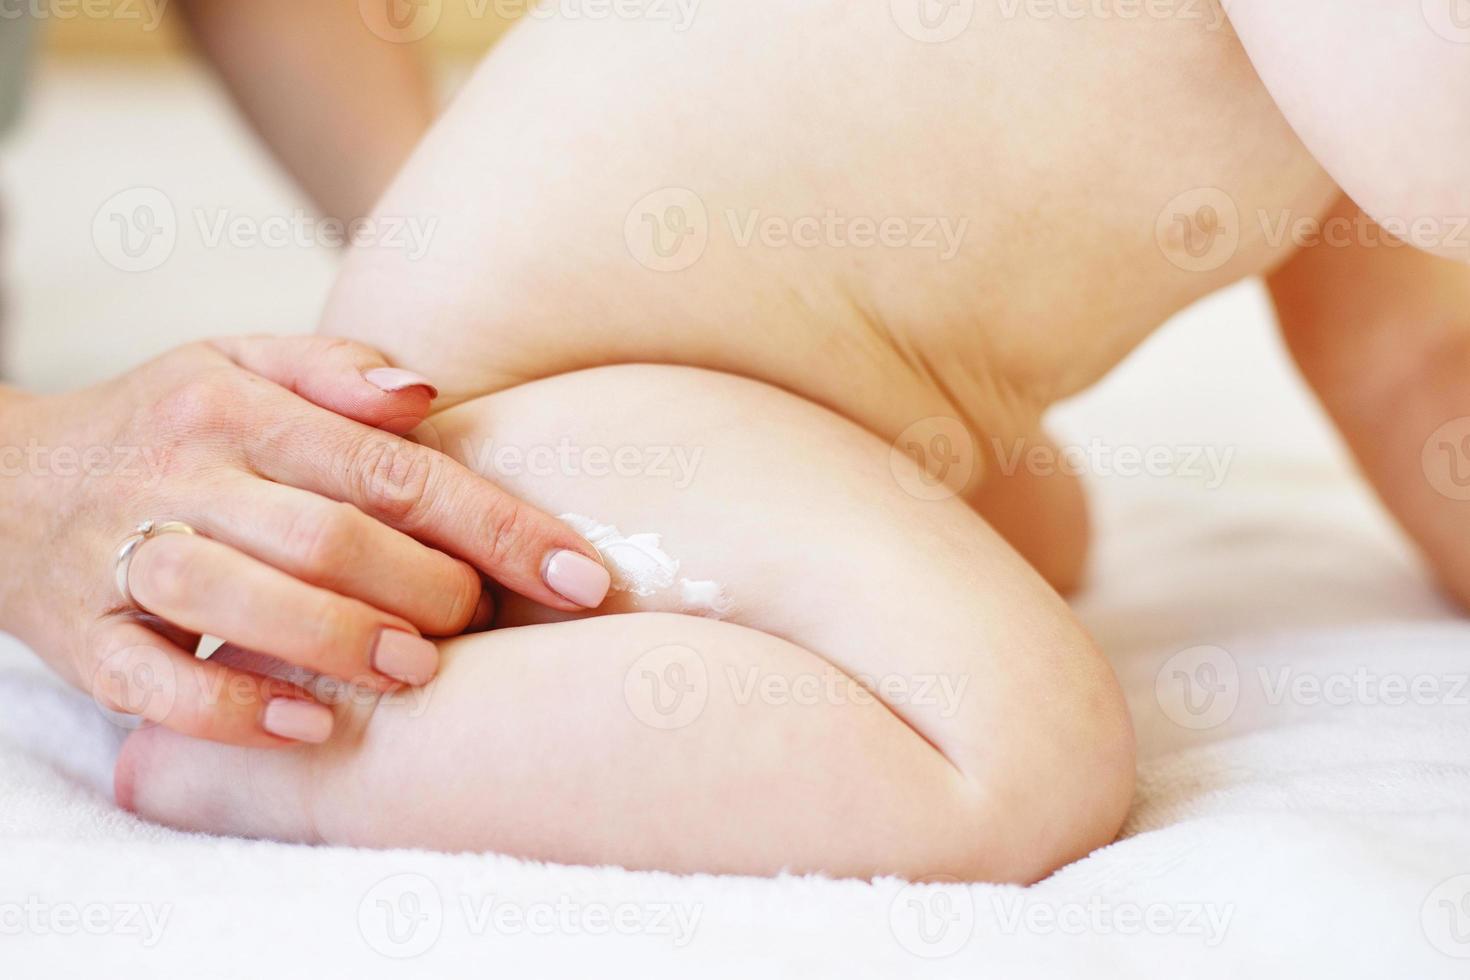 mutter, die zur hautpflege etwas creme mit der hand auf den babyarsch aufträgt. foto